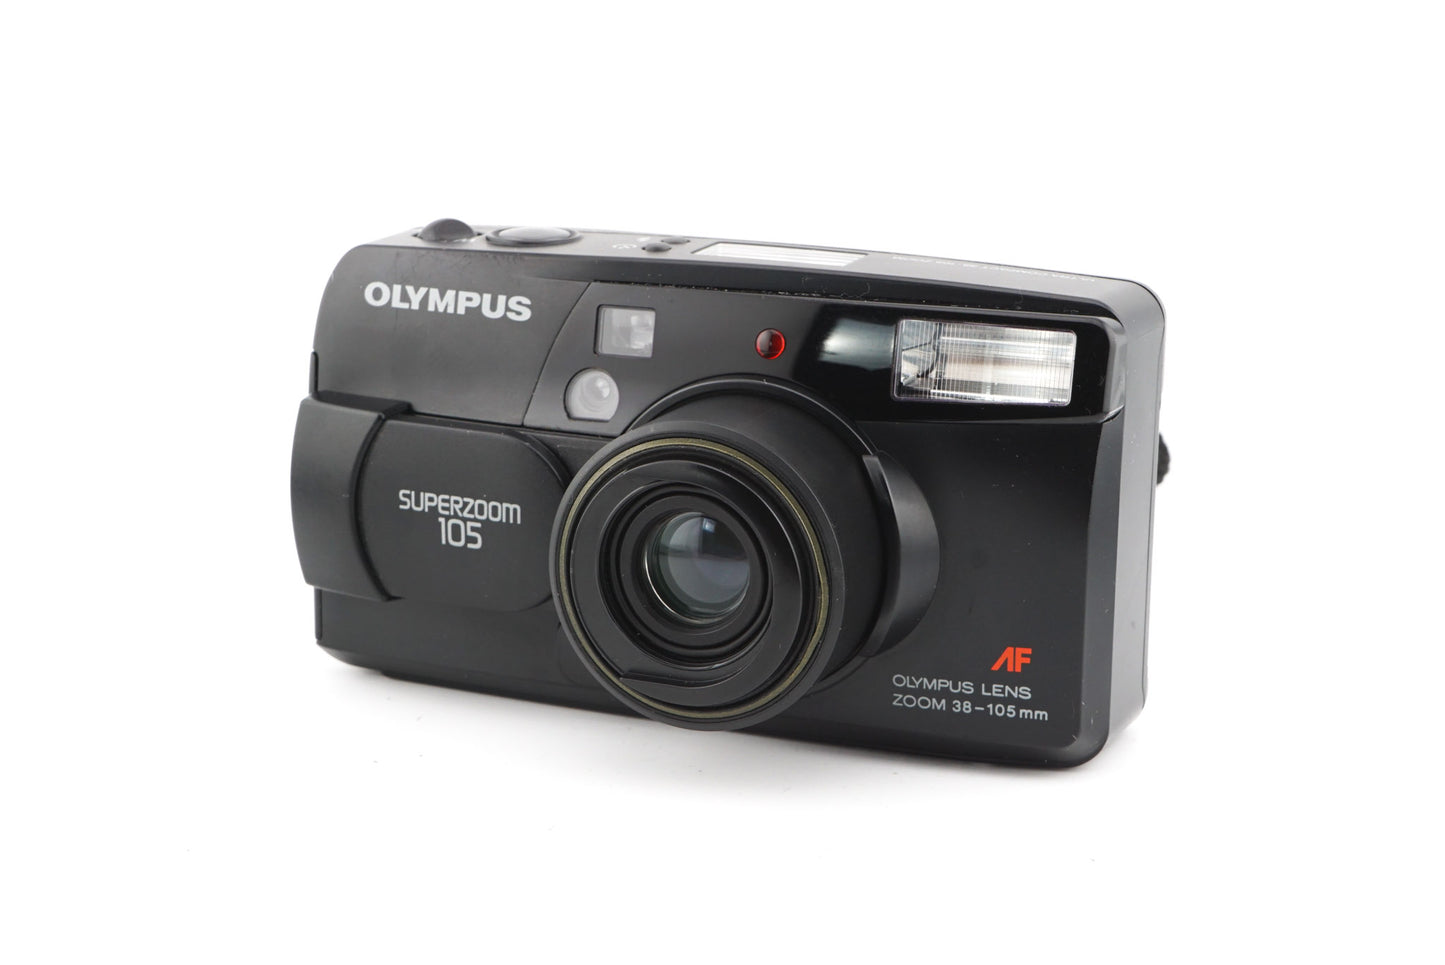 Olympus Superzoom 105 - Camera